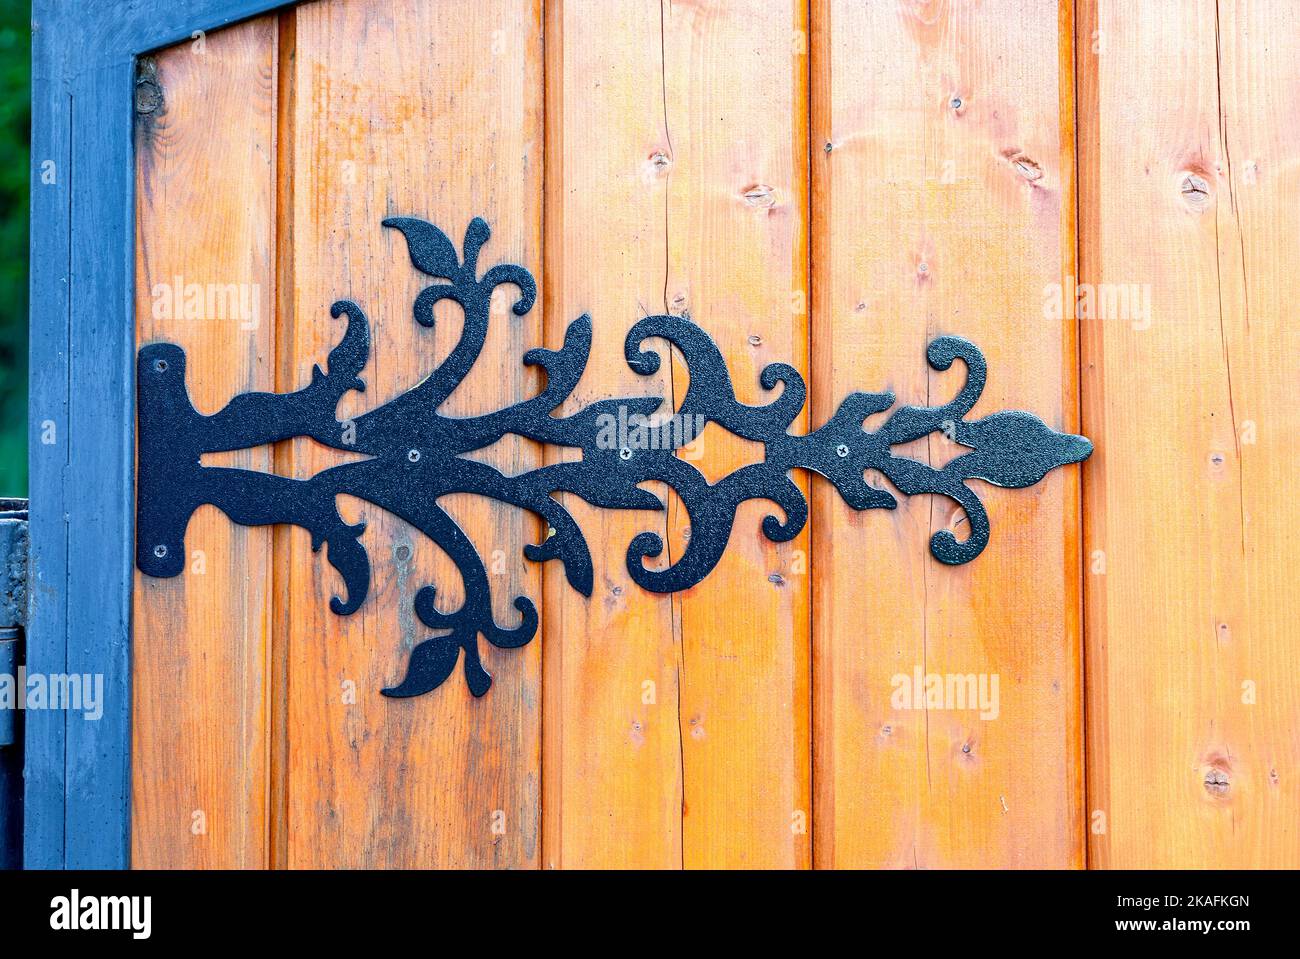 Black metal door hinge screwed to a wooden gate Stock Photo